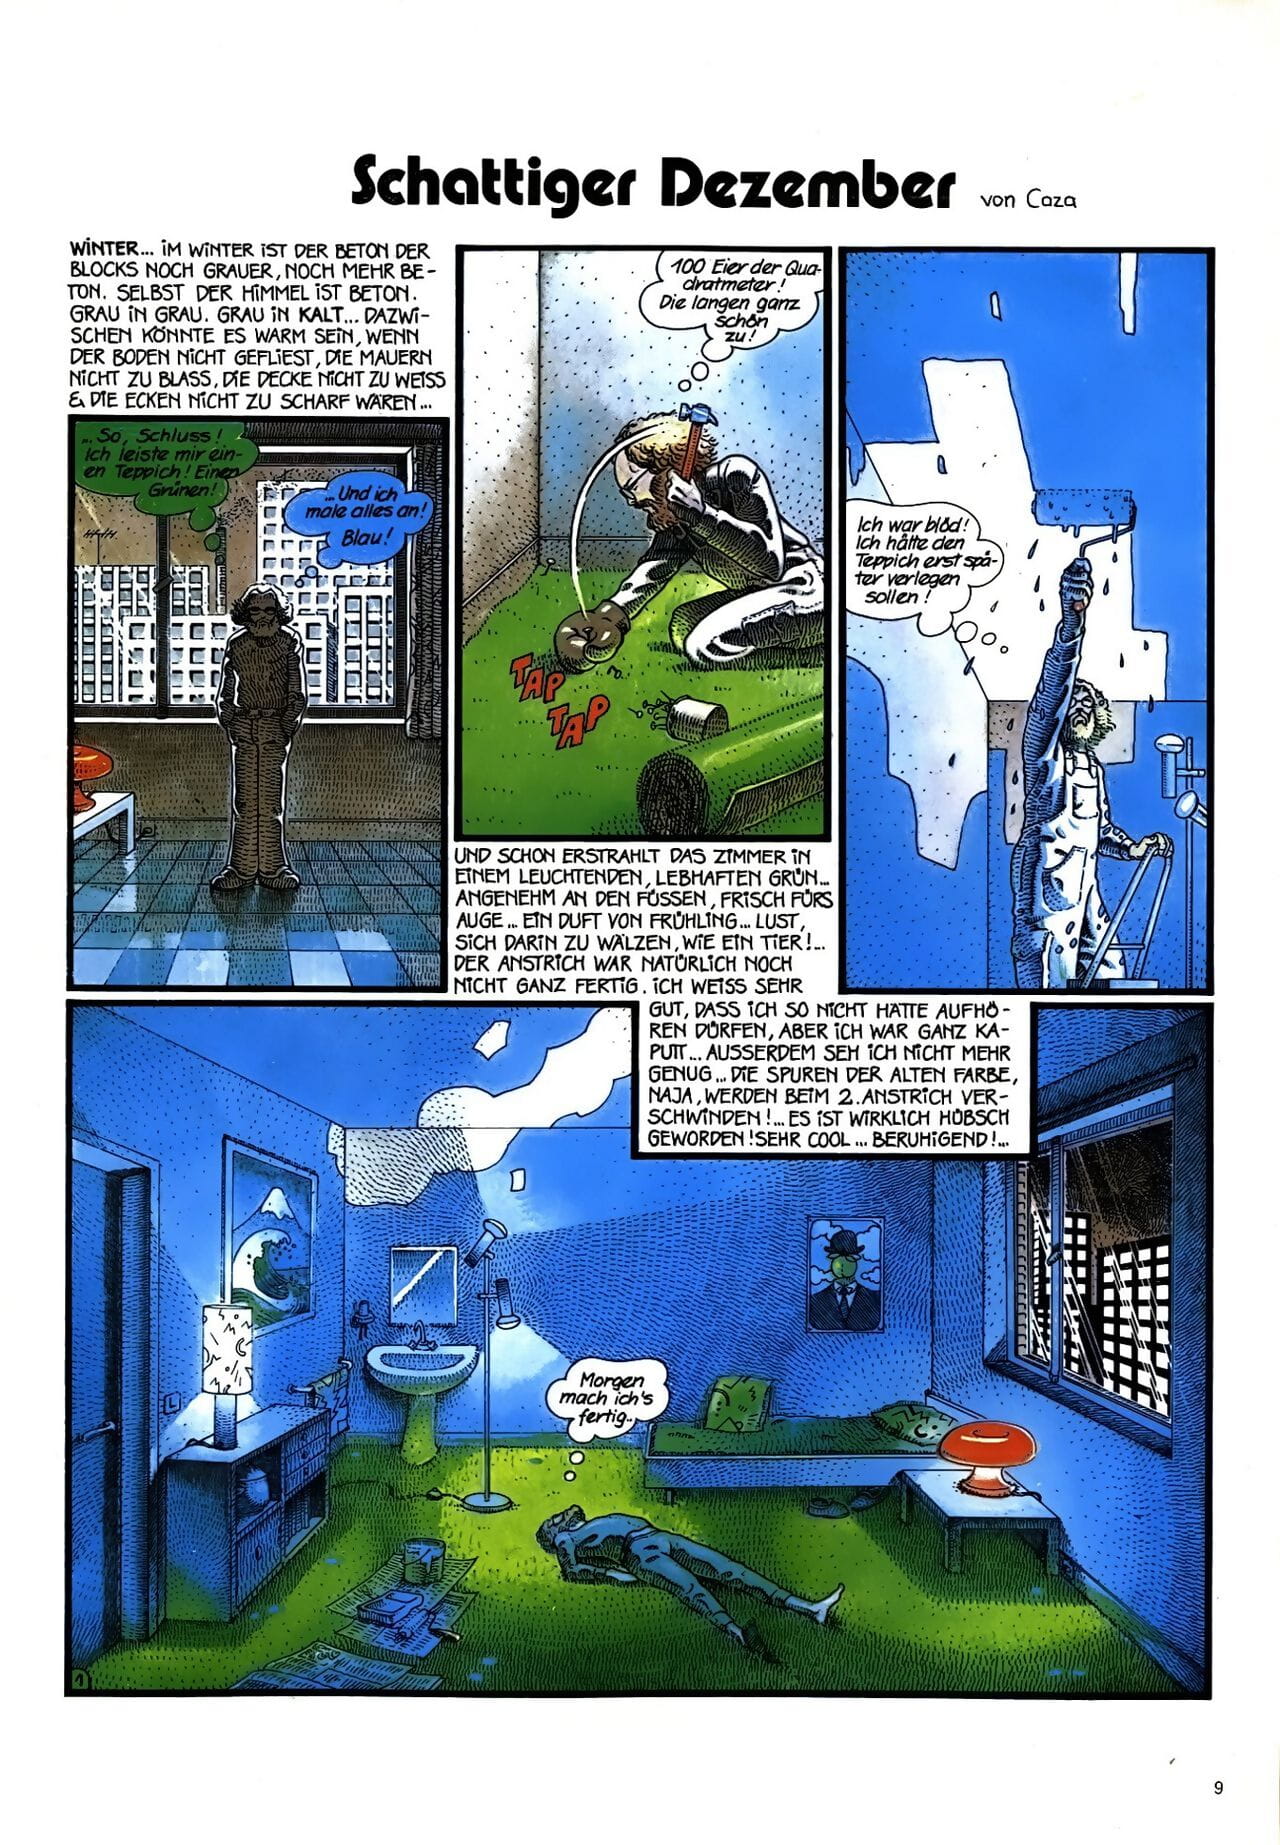 pilot #008 page 1